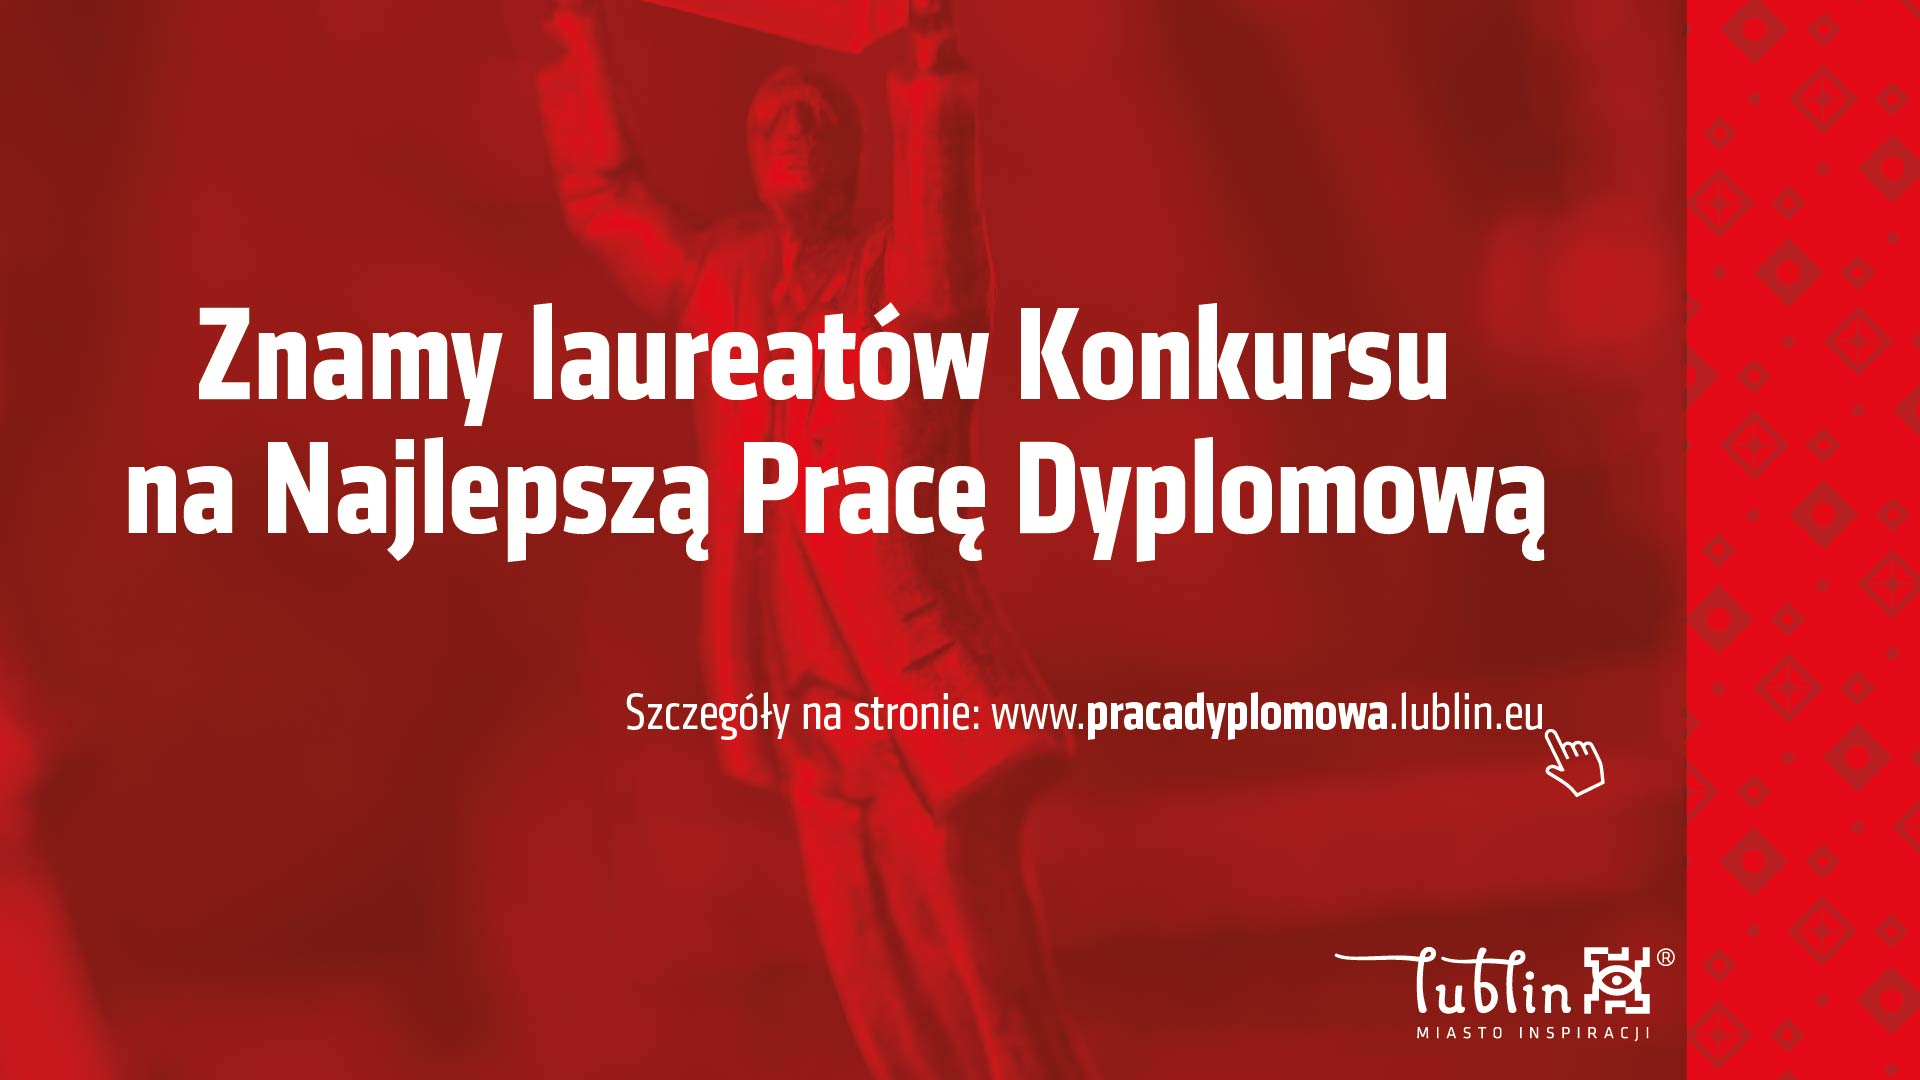 Lublin: Nagrody za najlepsze prace dyplomowe przyznane. Prace dotyczą rozwoju gospodarczego - Zdjęcie główne